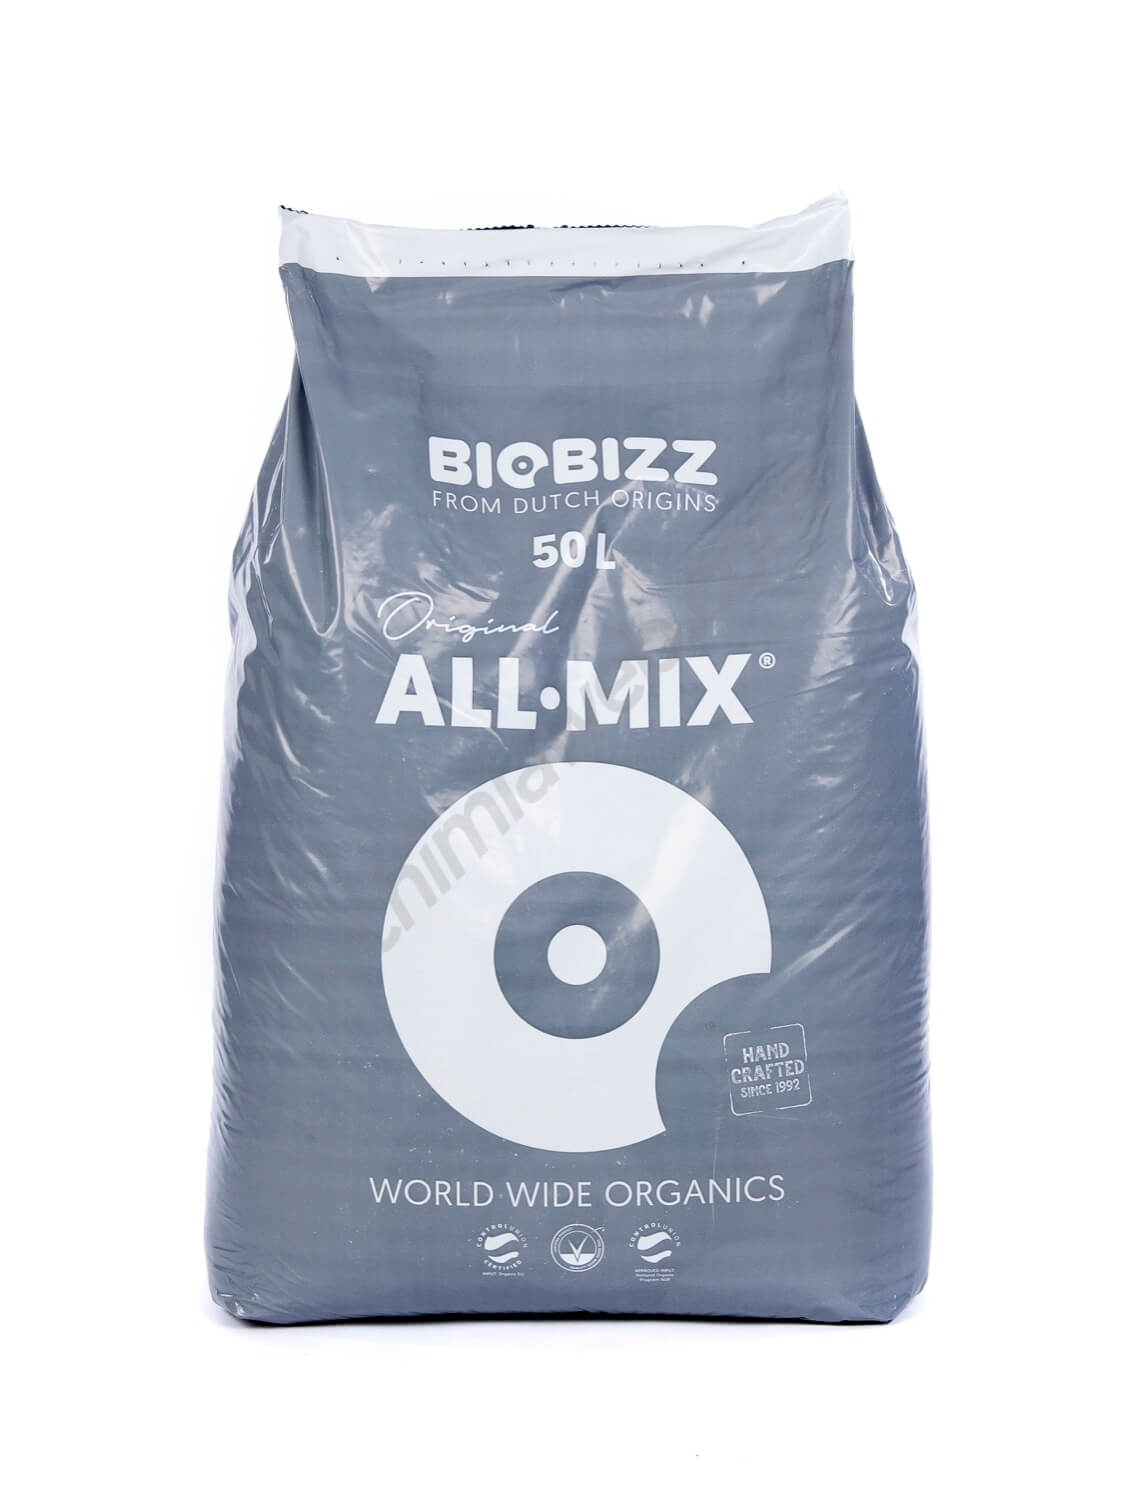 All Mix by Bio Bizz